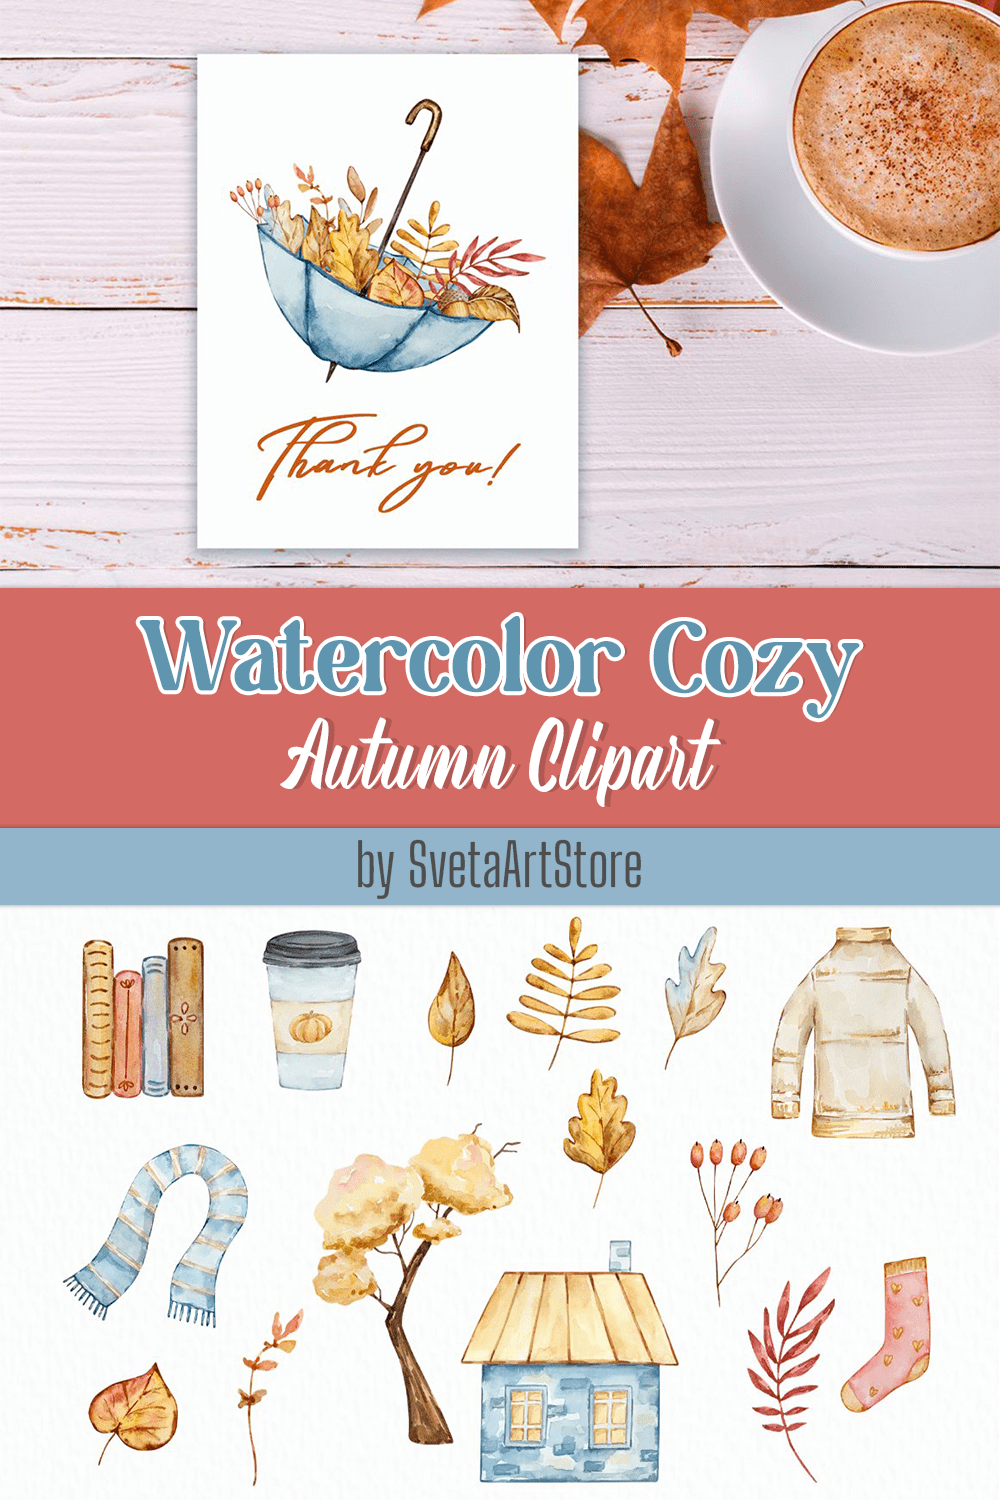 watercolor cozy autumn clipart pinterest